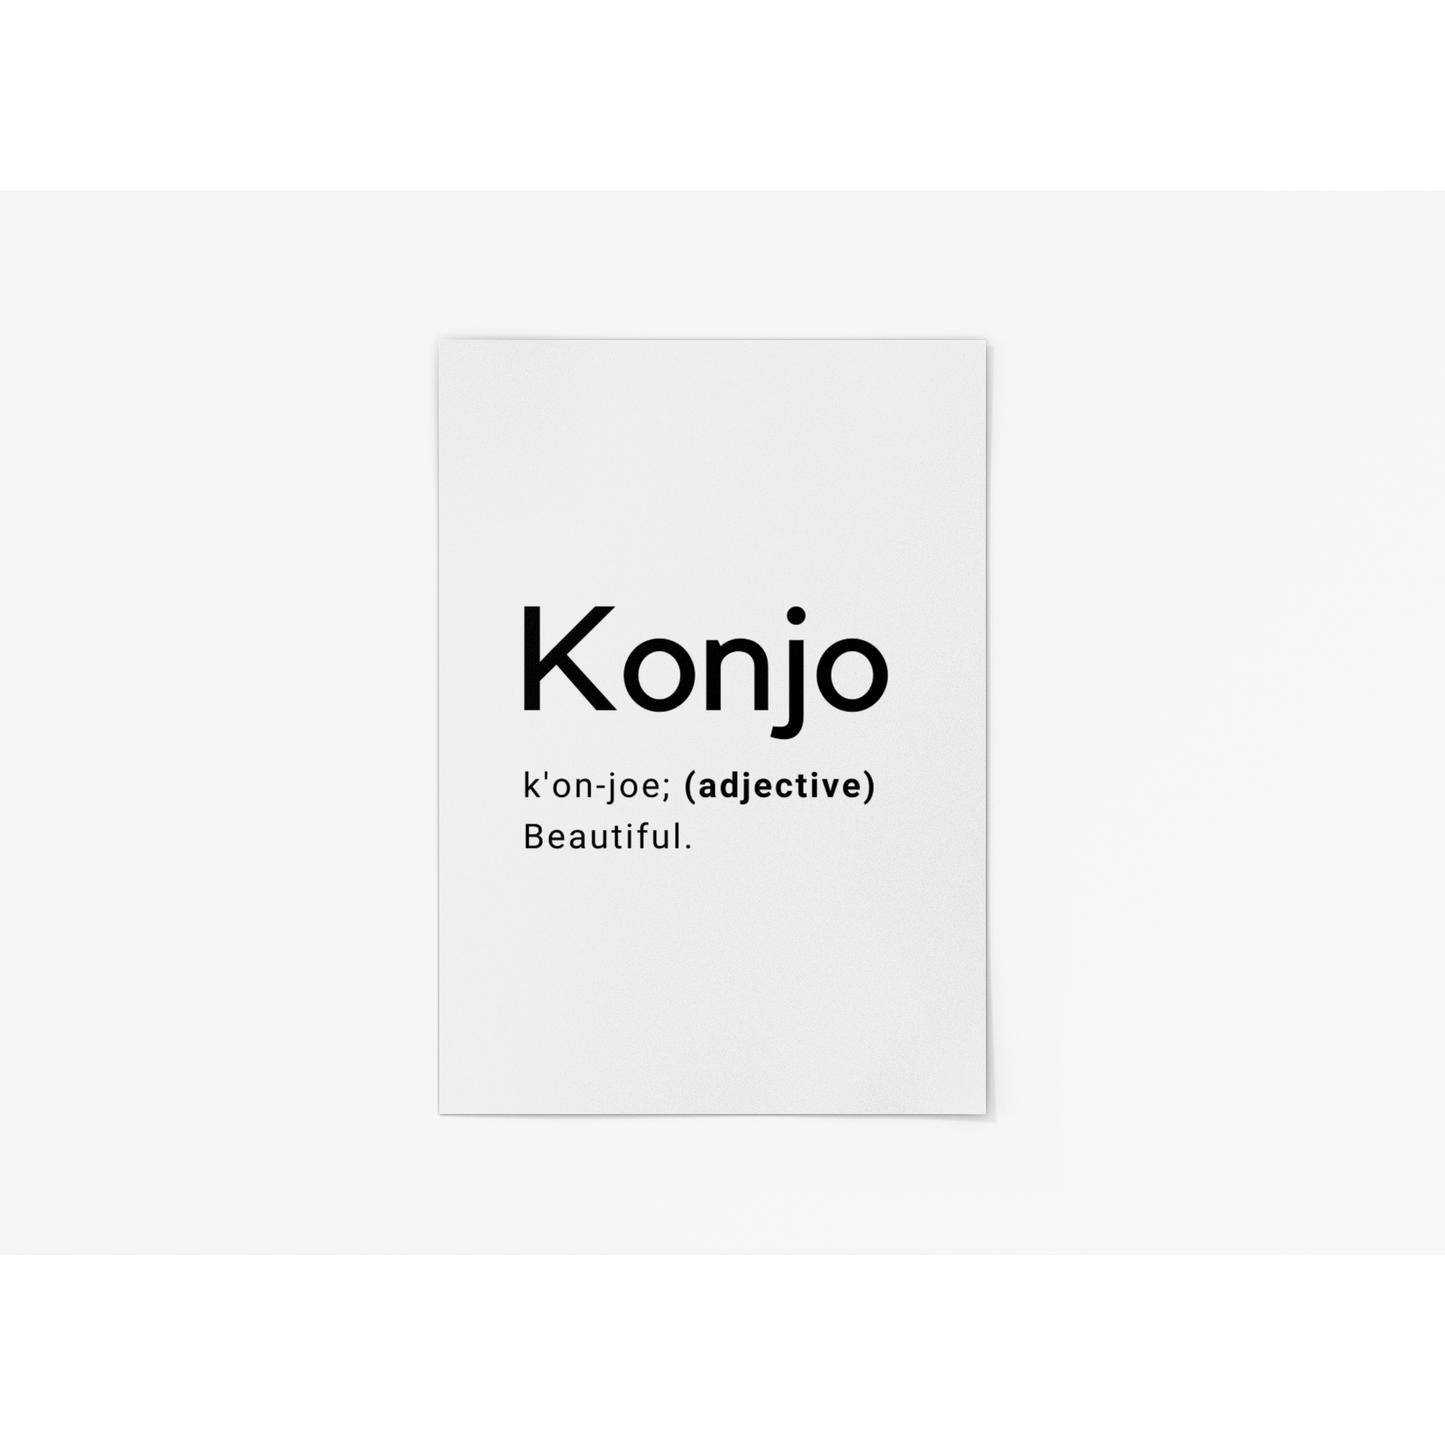 Konjo Definition Print - 12x16